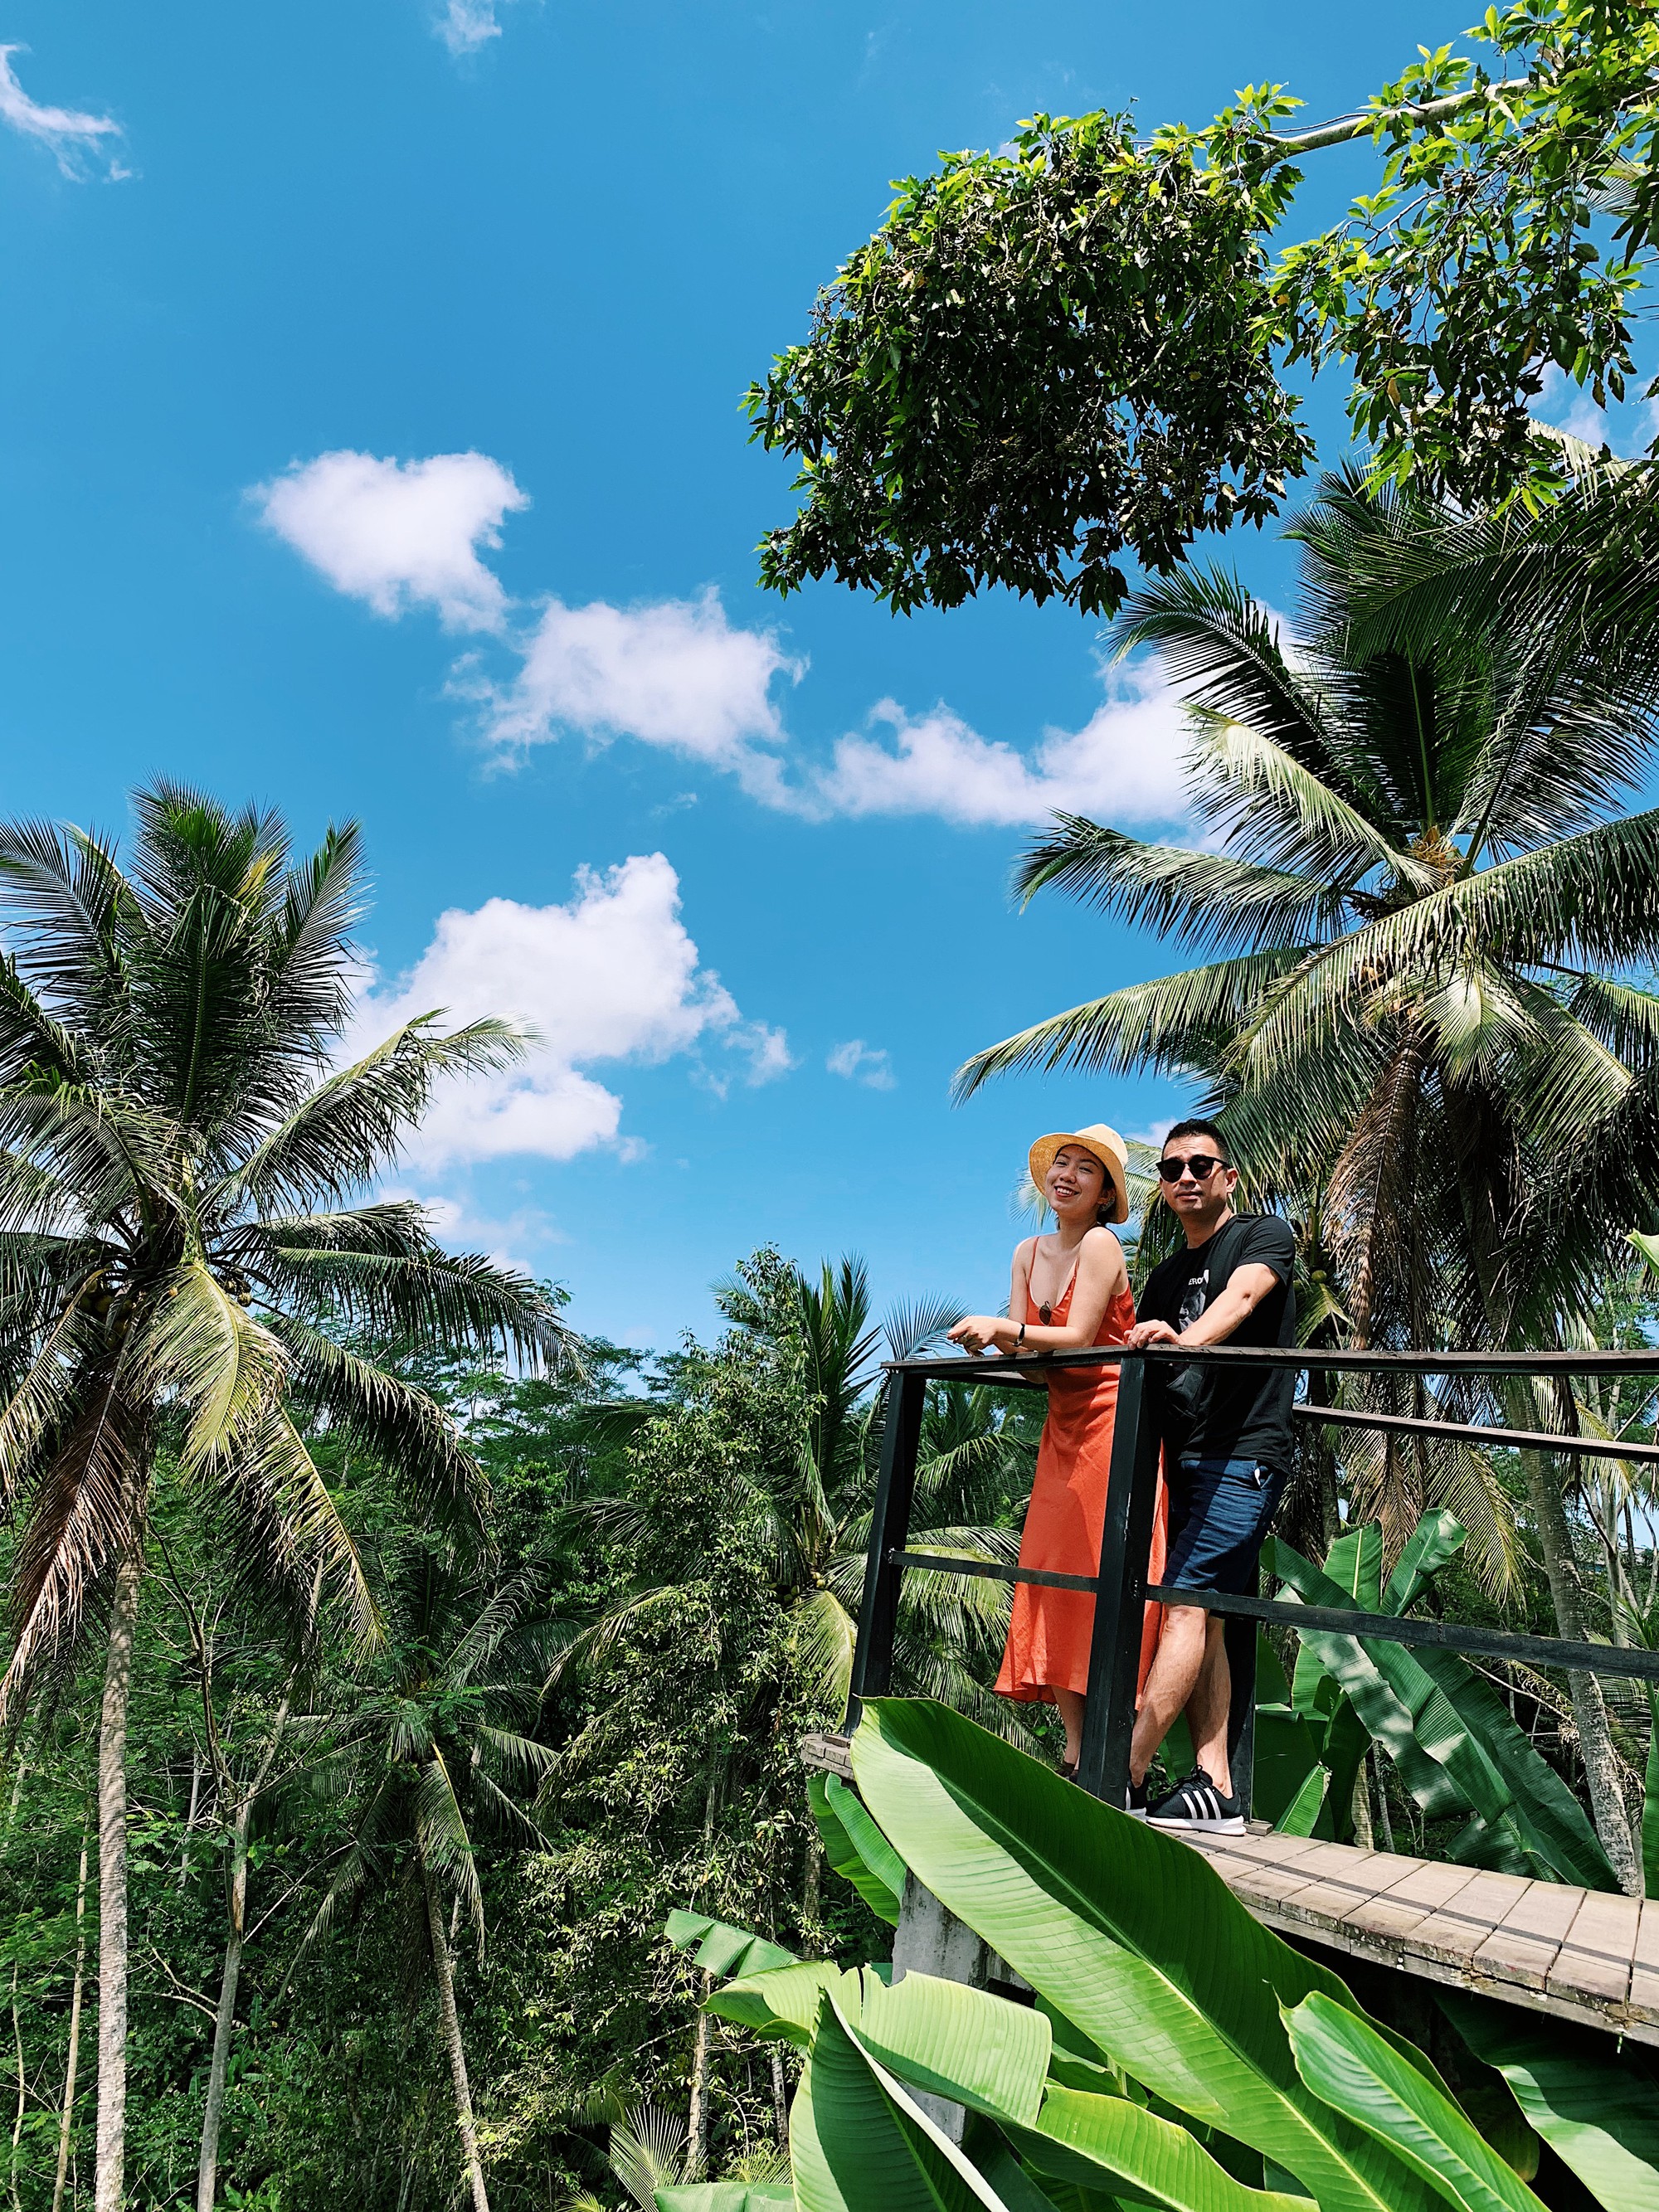 Mặc cho người khen kẻ chê về Bali, cặp vợ chồng doanh nhân vẫn chọn hòn đảo thiên đường để kỷ niệm 1 năm ngày cưới - Ảnh 3.